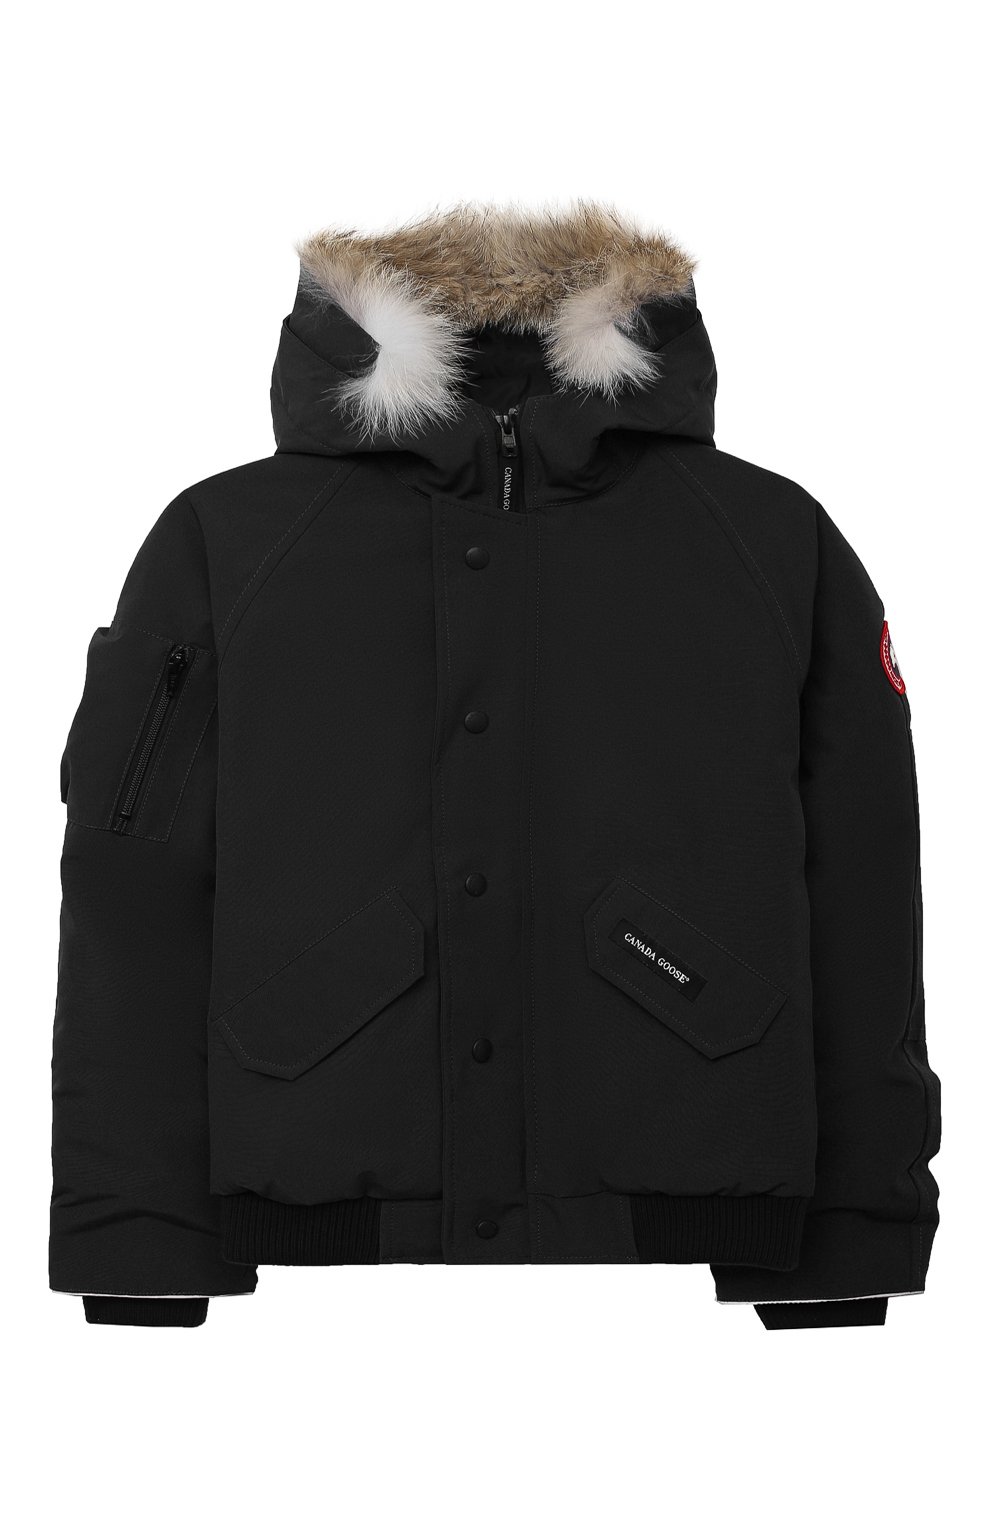 Пуховая куртка Rundle с меховой отделкой на капюшоне Canada Goose